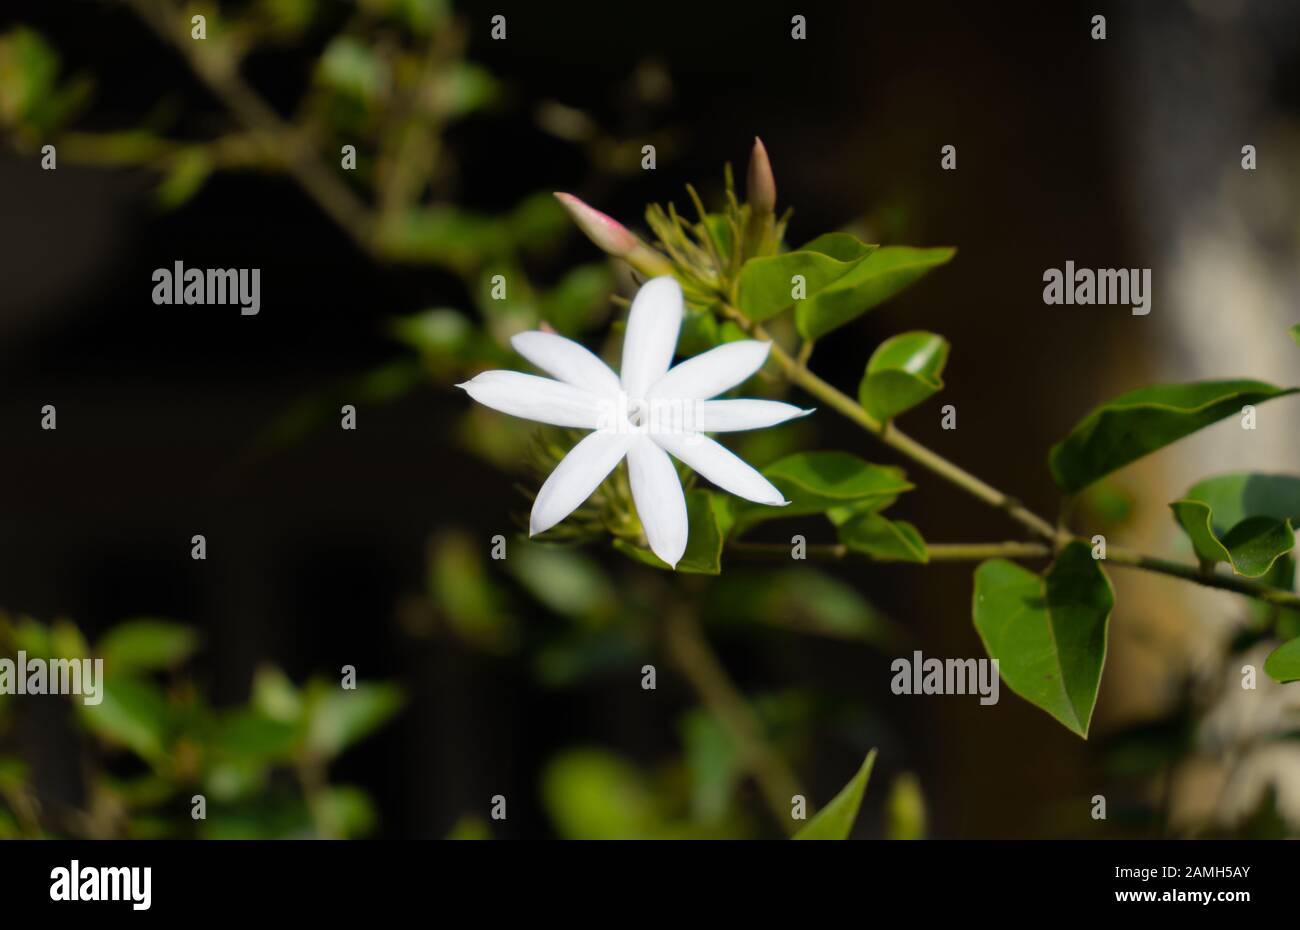 Star Jasmine flower bokeh effect Stock Photo